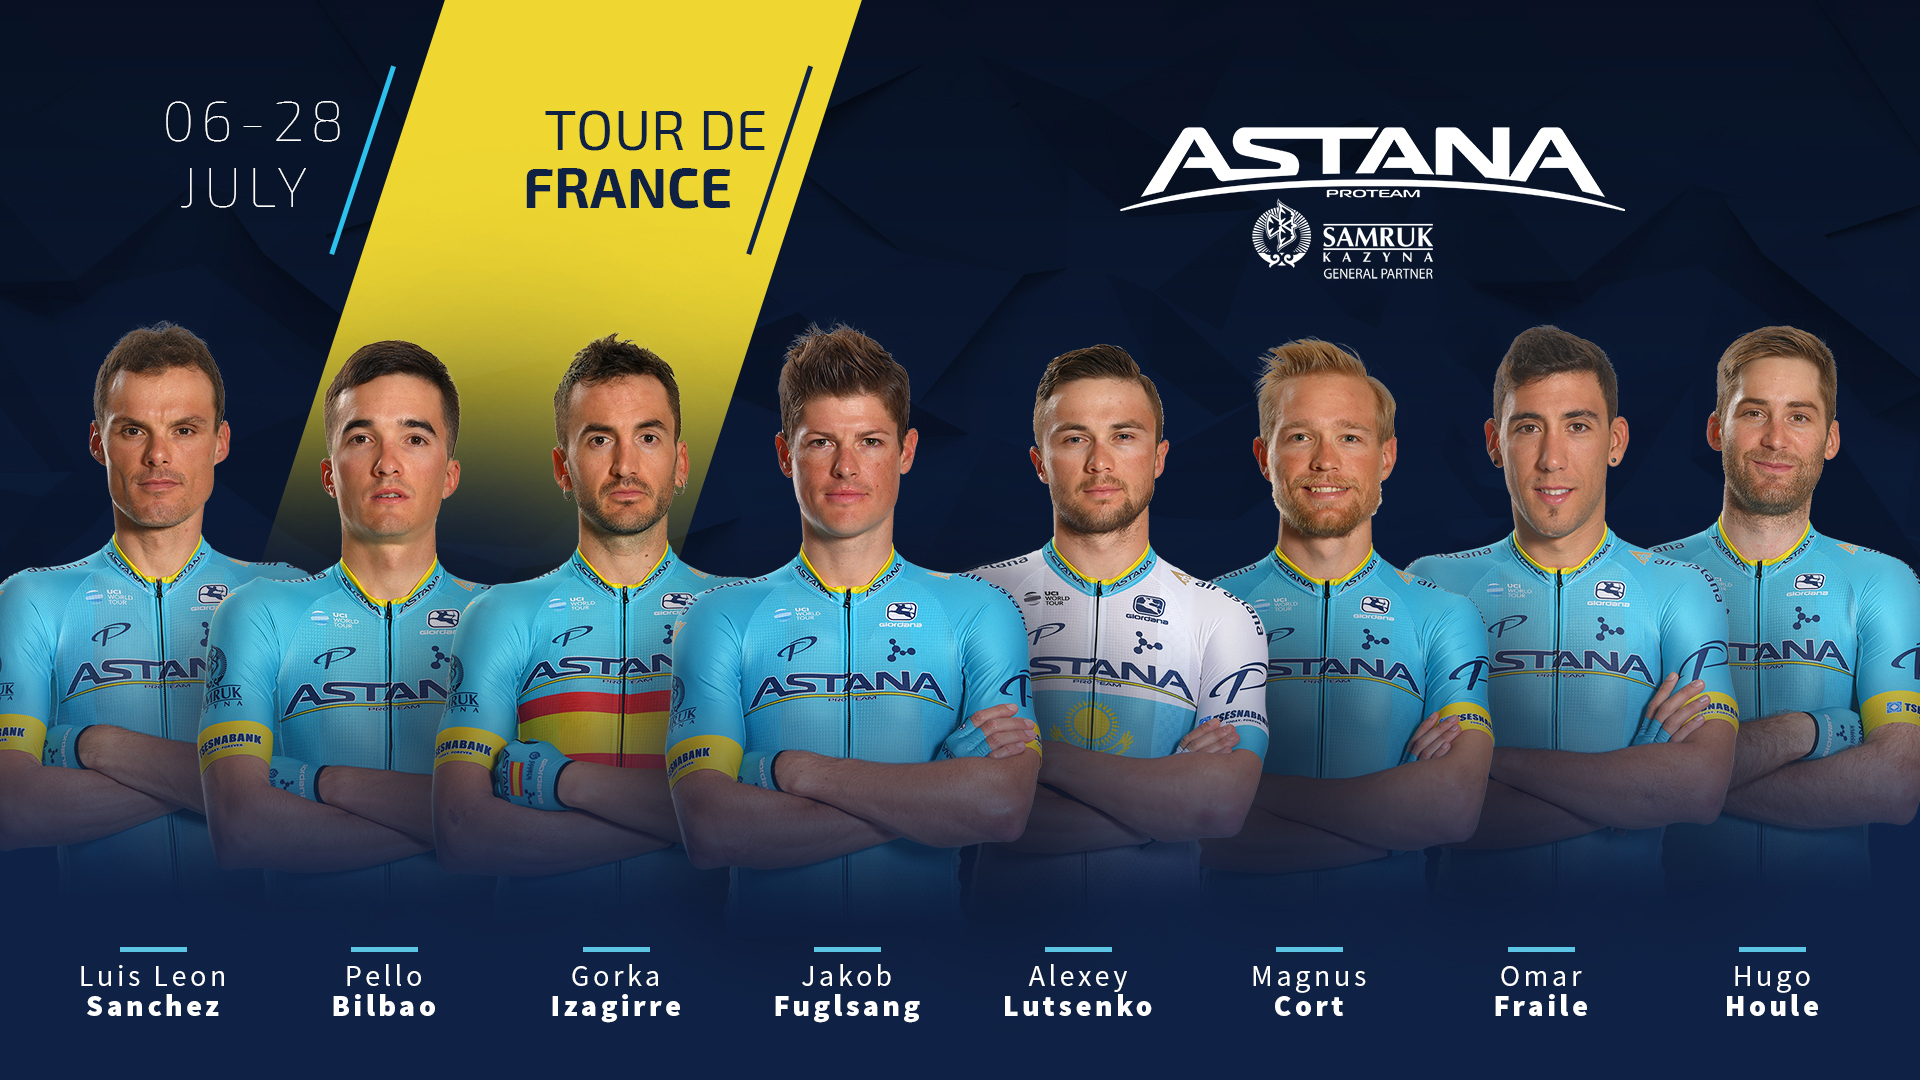 アスタナプロチームがツール ド フランス2019の参加選手を発表